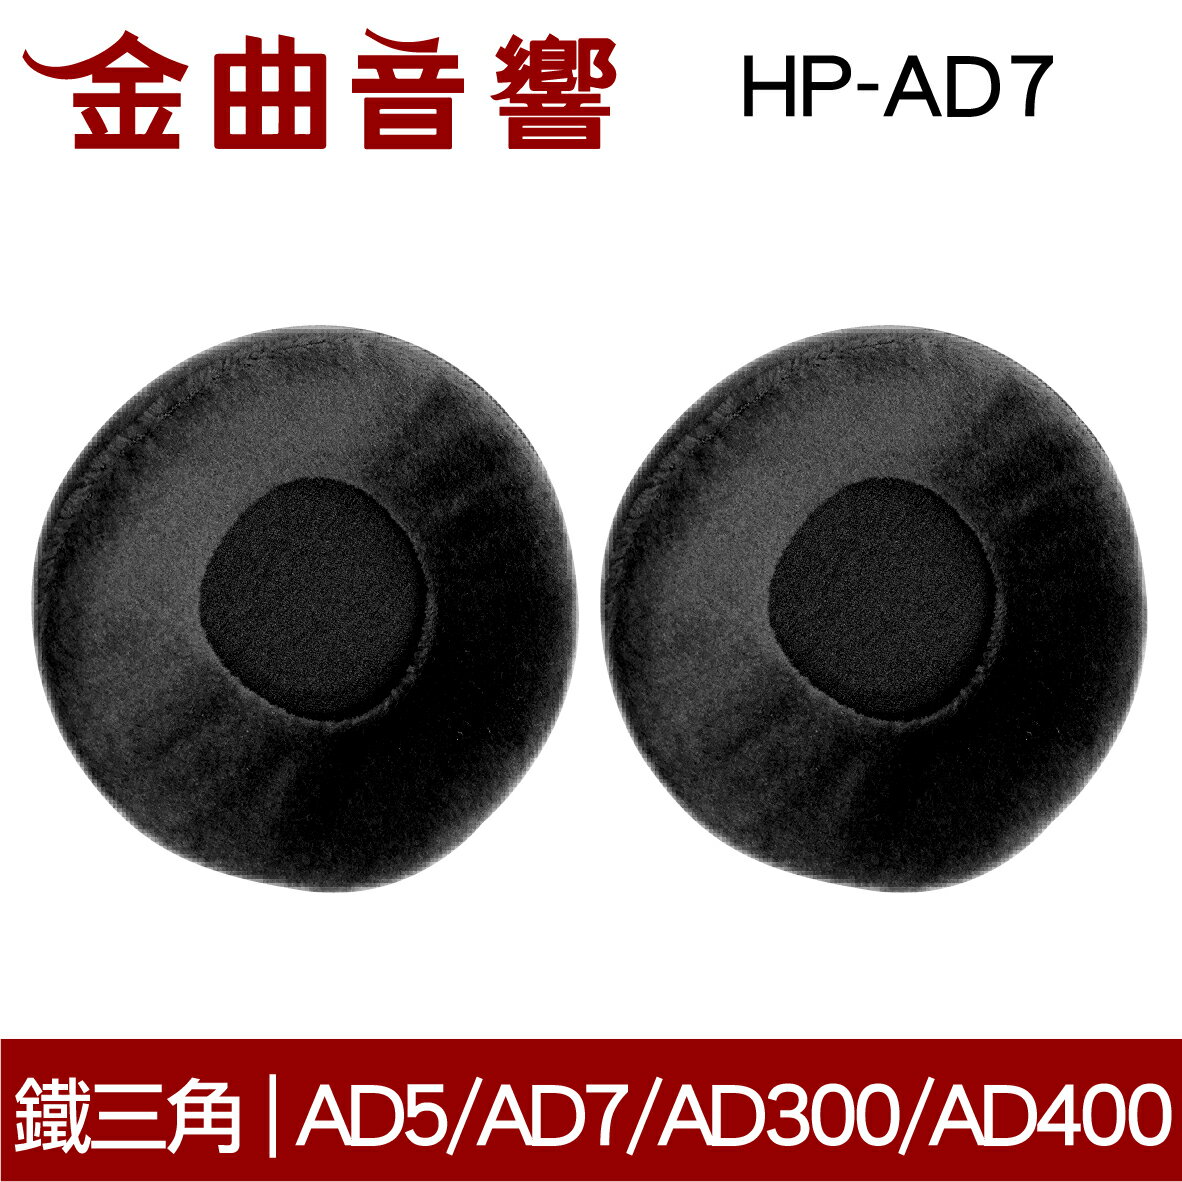 鐵三角 HP-AD7 替換耳罩 一對 ATH-AD5/AD7/AD300/AD400 適用 | 金曲音響